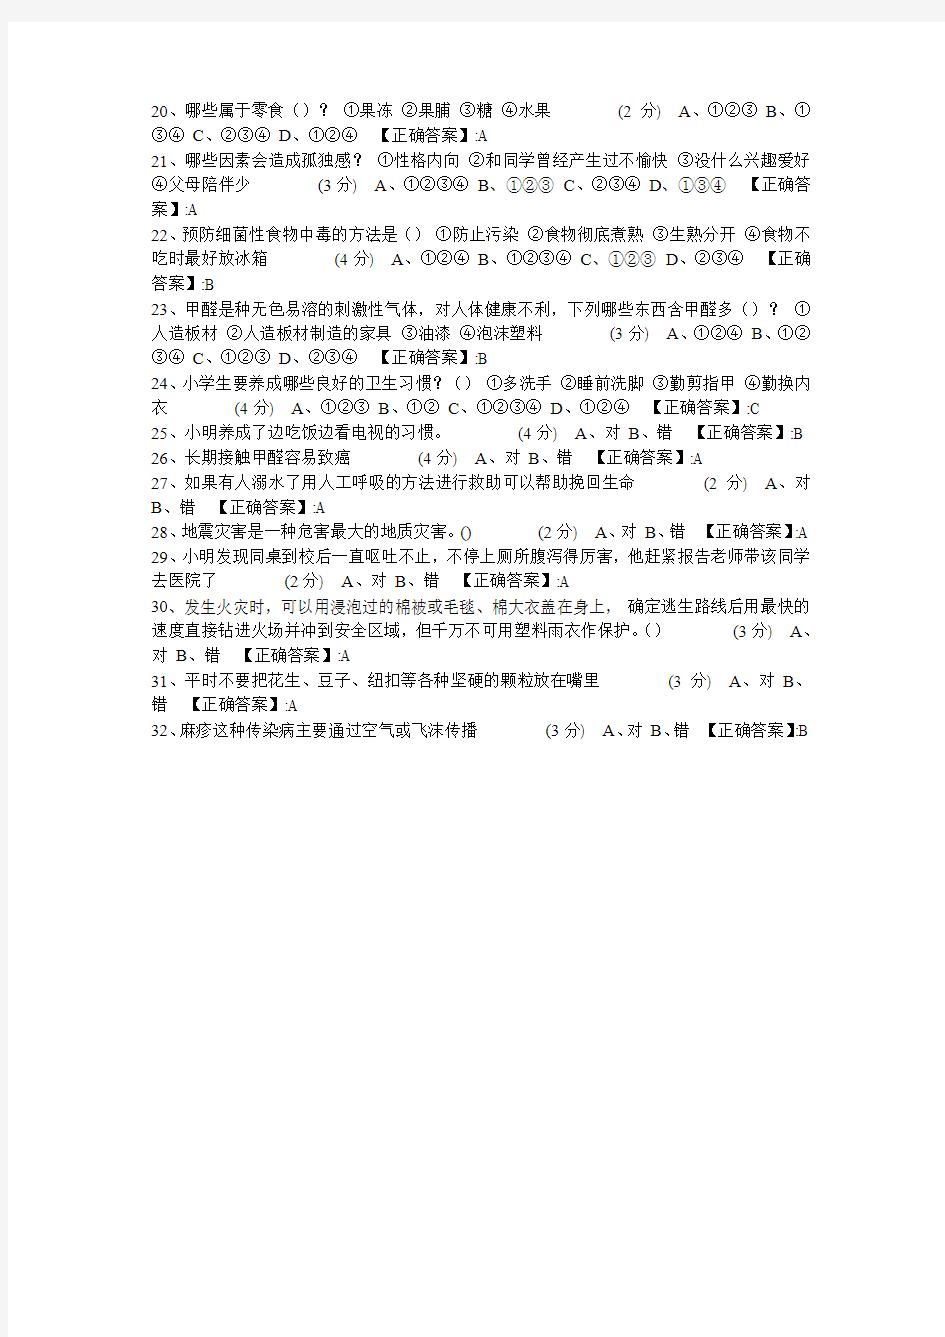 2013年江西省小学六年级学网络安全知识考试答案